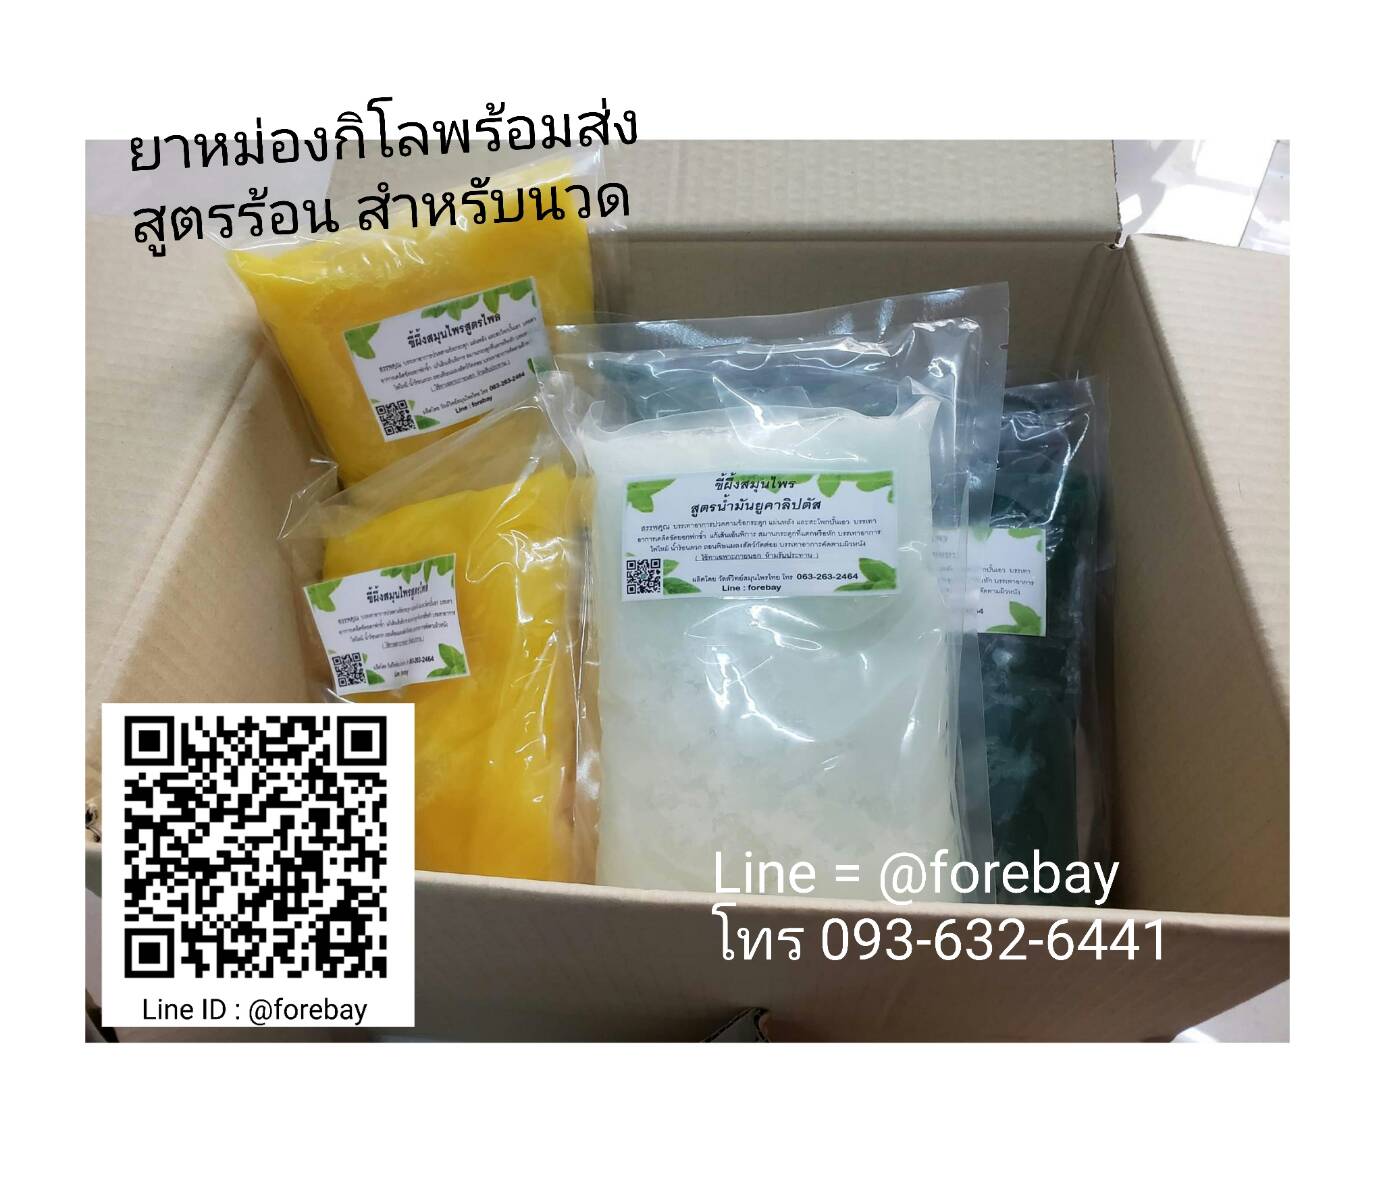 รับหิ้วยาหม่องไปบาเรนห์  ราคาเรท 1 กิโล เท่านั้น ( ราคารวมค่าส่งบาเรนท์แล้ว ) ยาหม่องร้านนวดออสเตรเลีย Thai Balm 089-323-2395